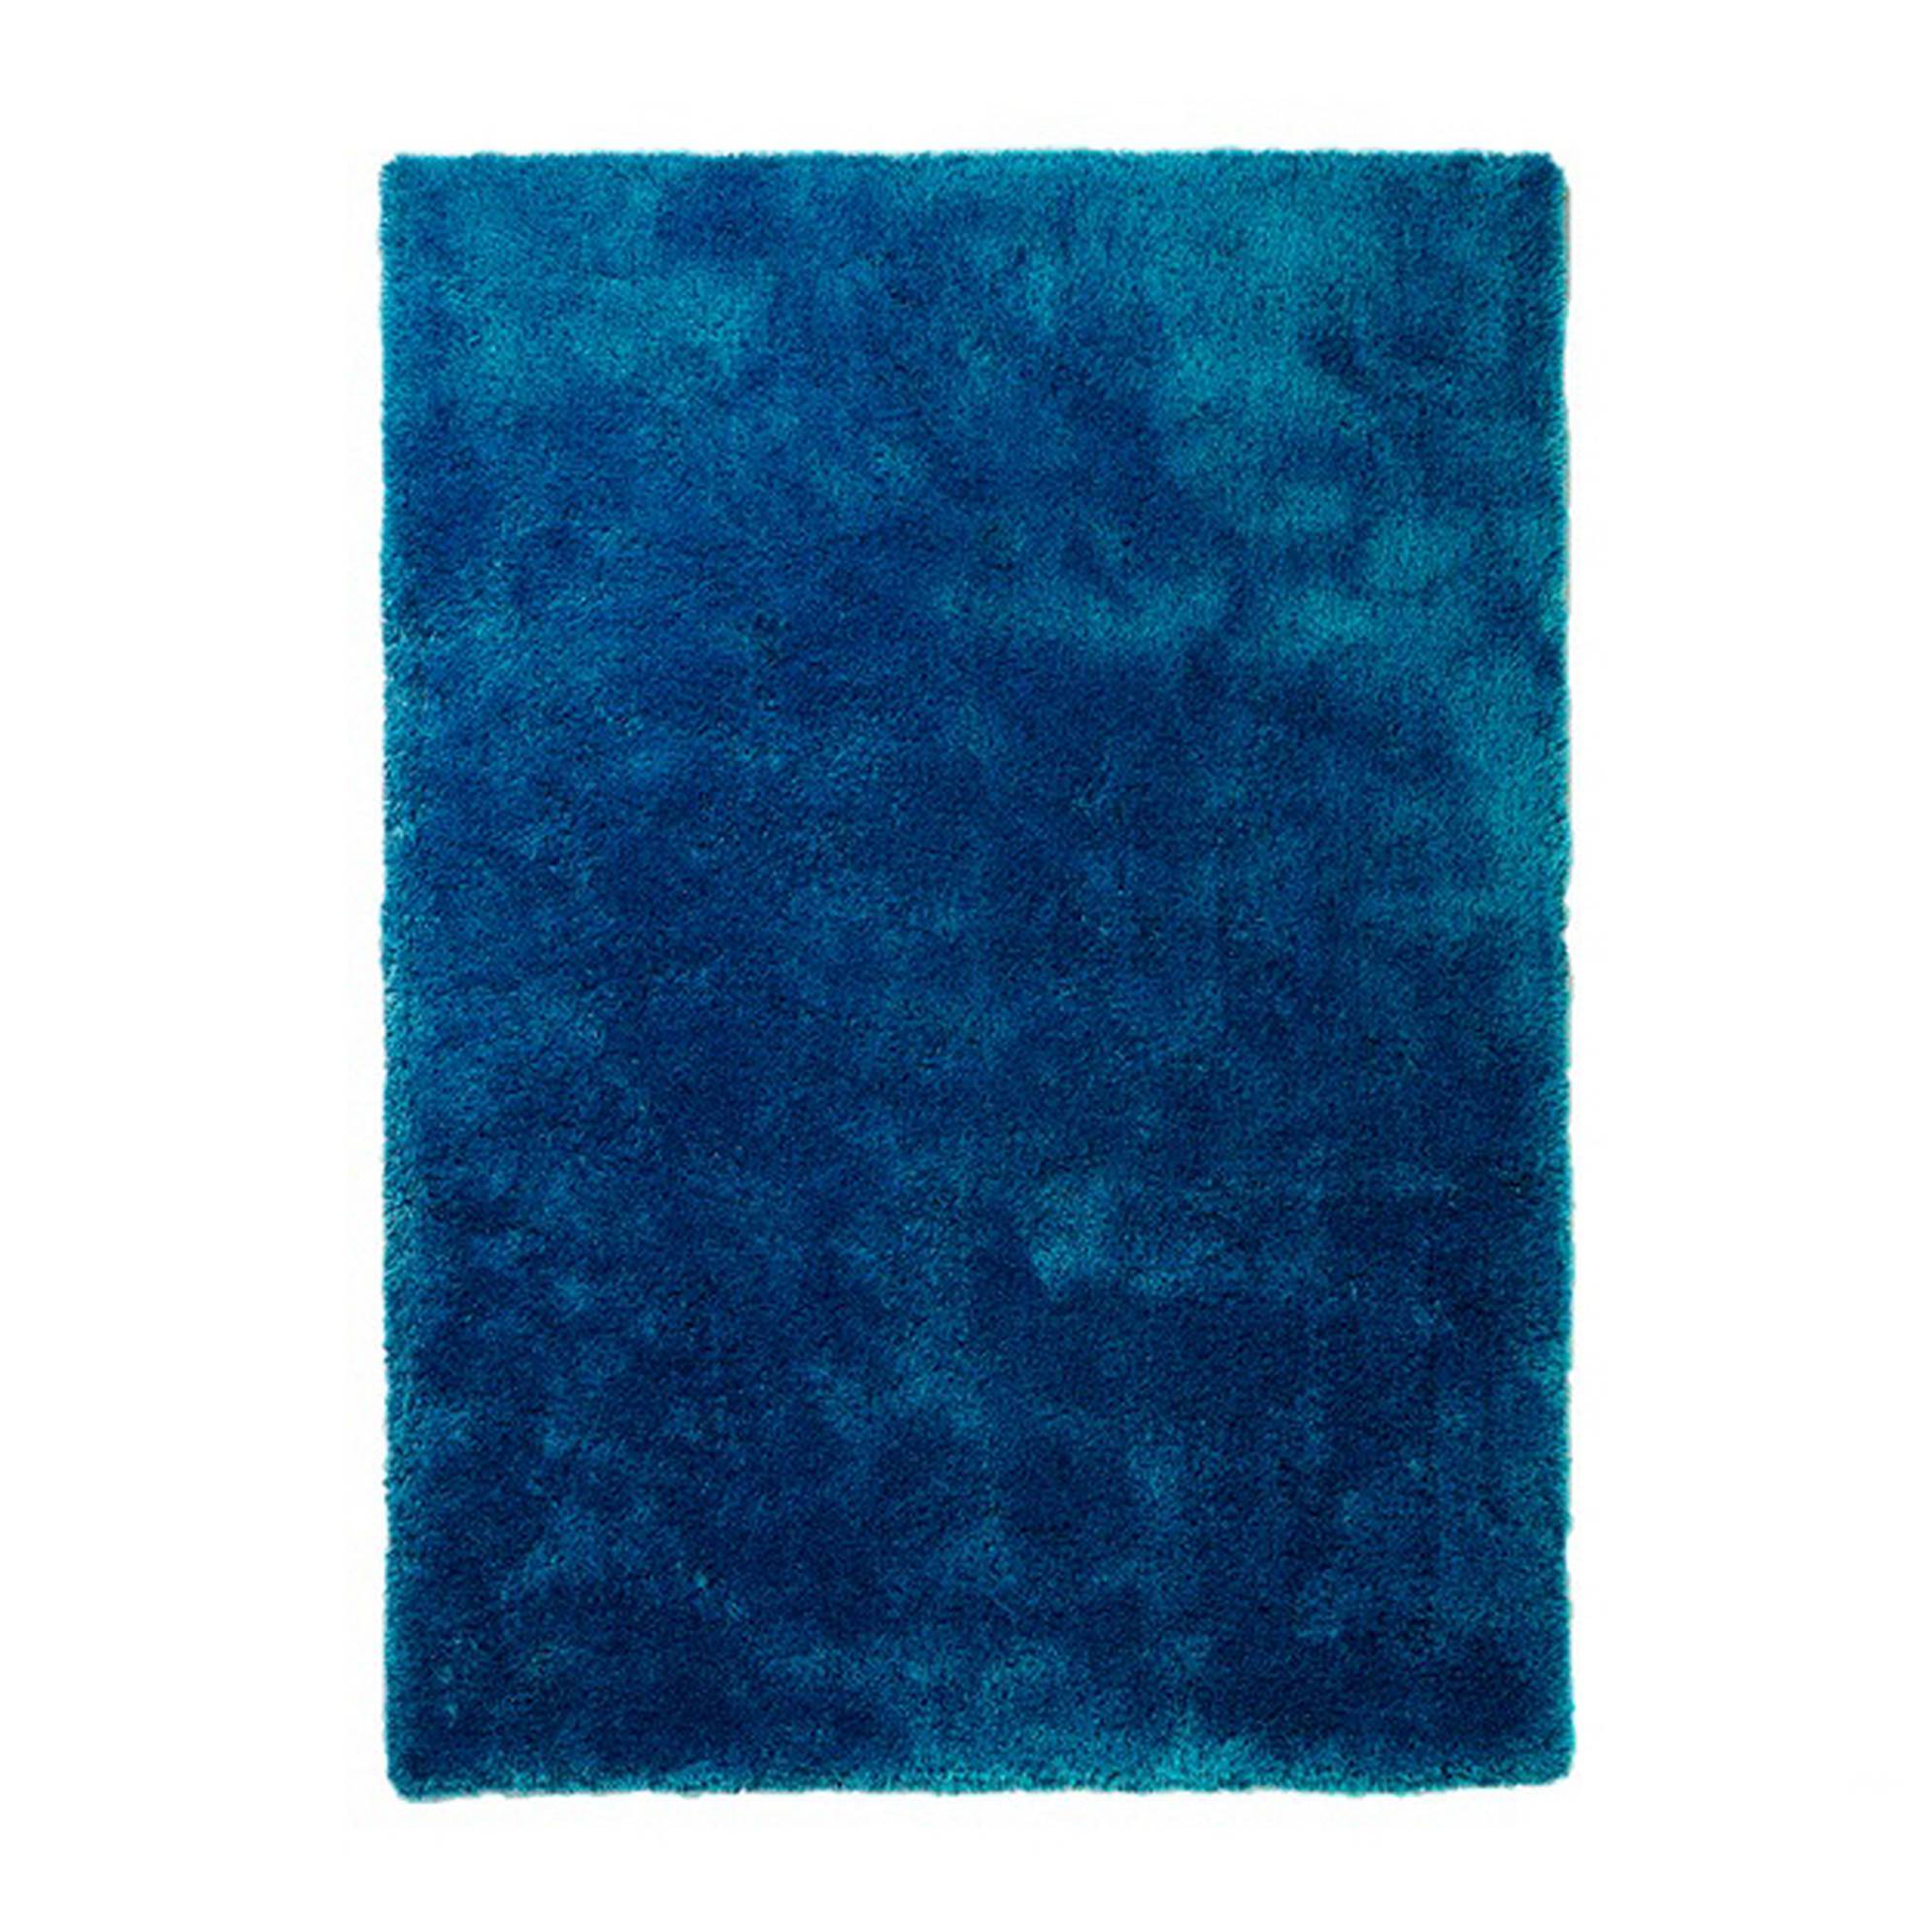 Teppich Estero - Blau - 170 x 240 cm, Colourcourage